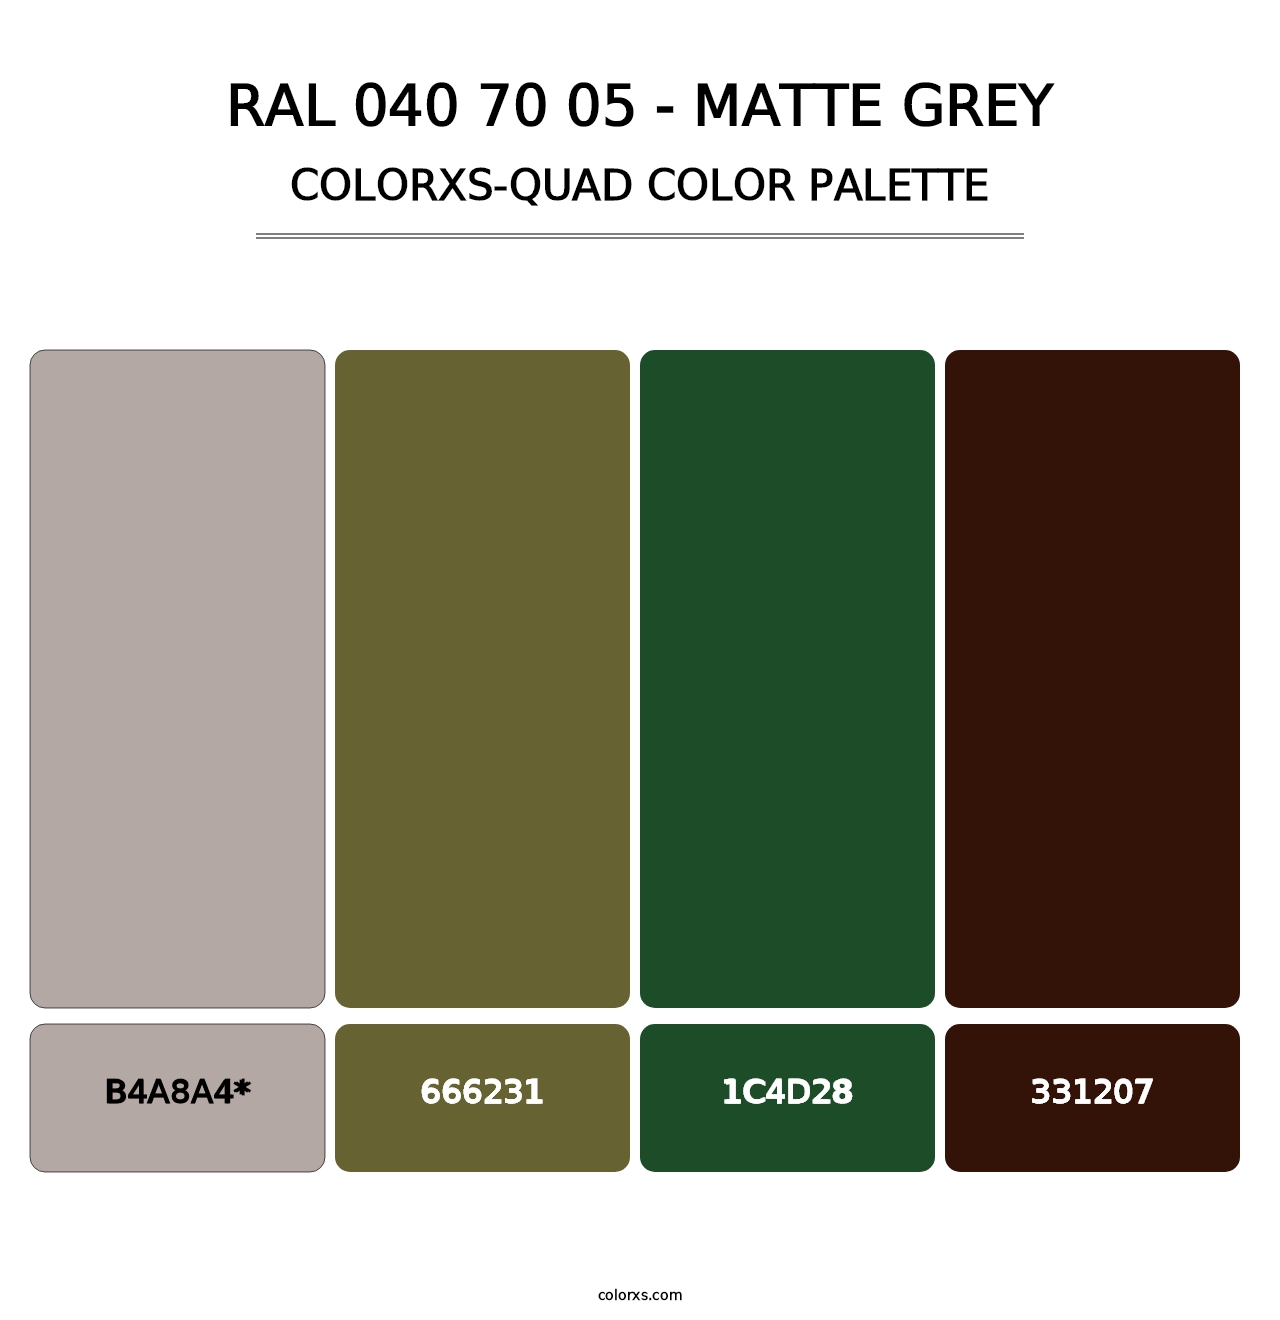 RAL 040 70 05 - Matte Grey - Colorxs Quad Palette